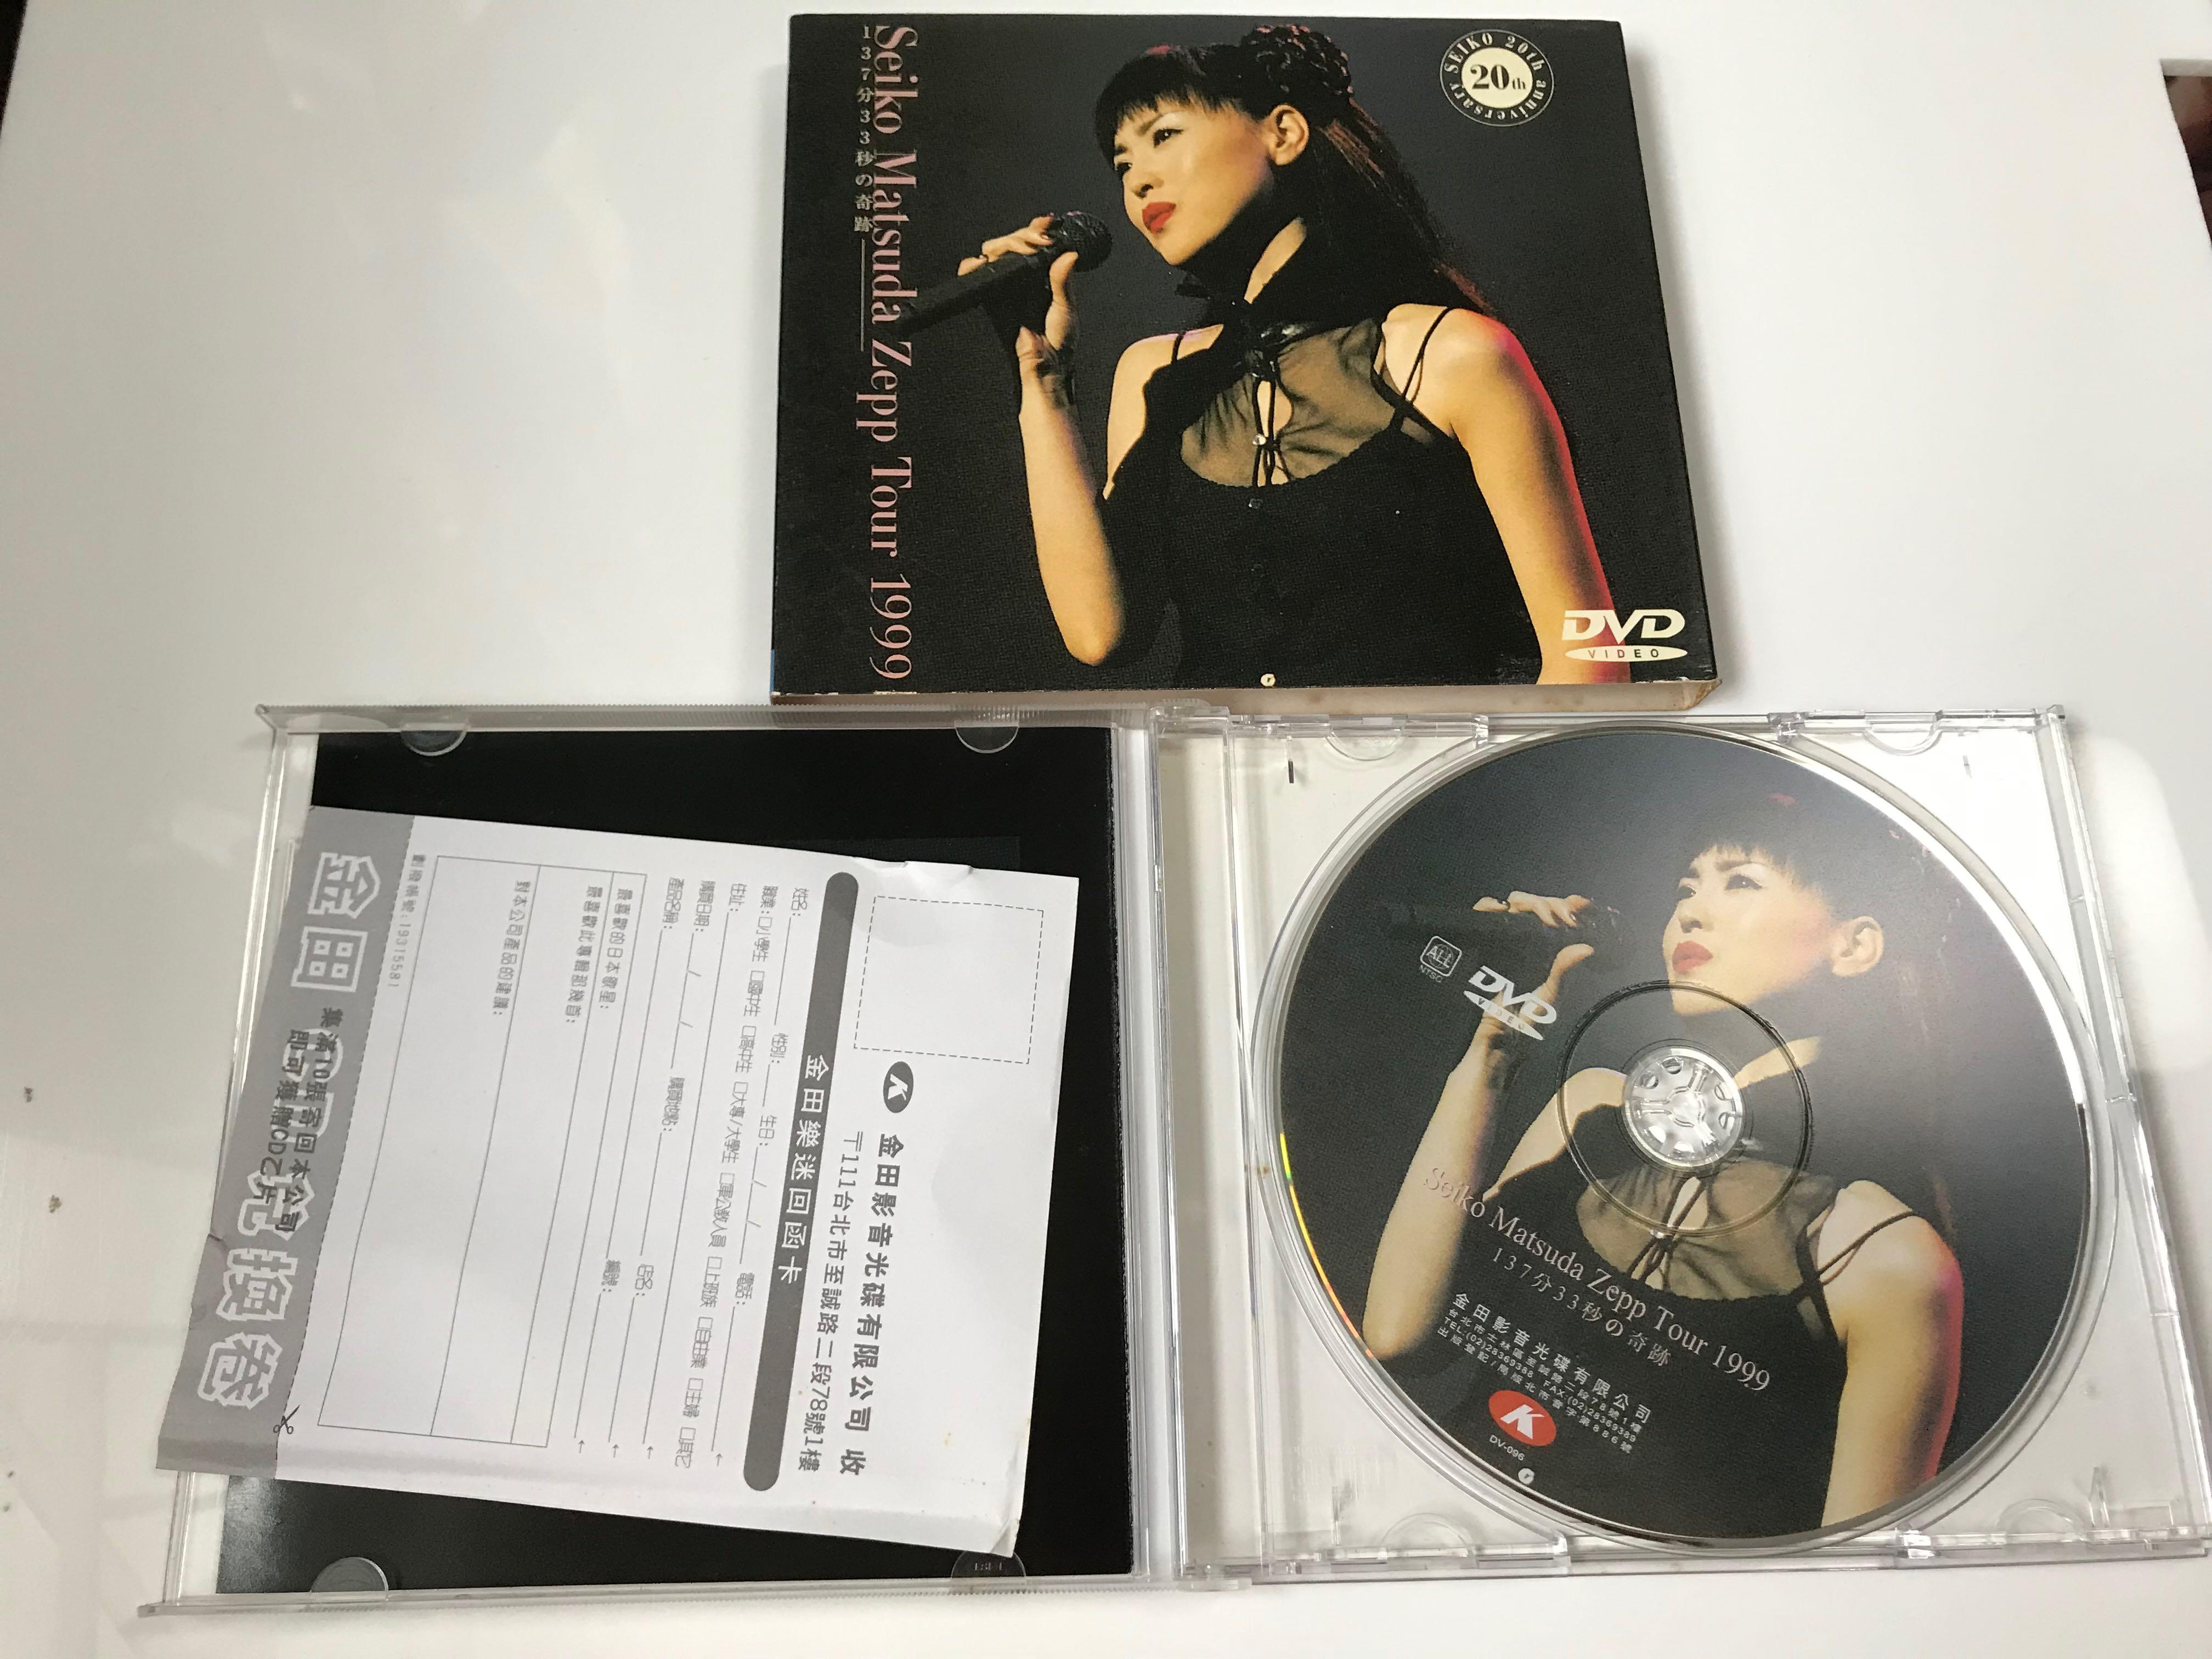 Seiko Matsuda Zepp Tour 1999 松田聖子 DVD-